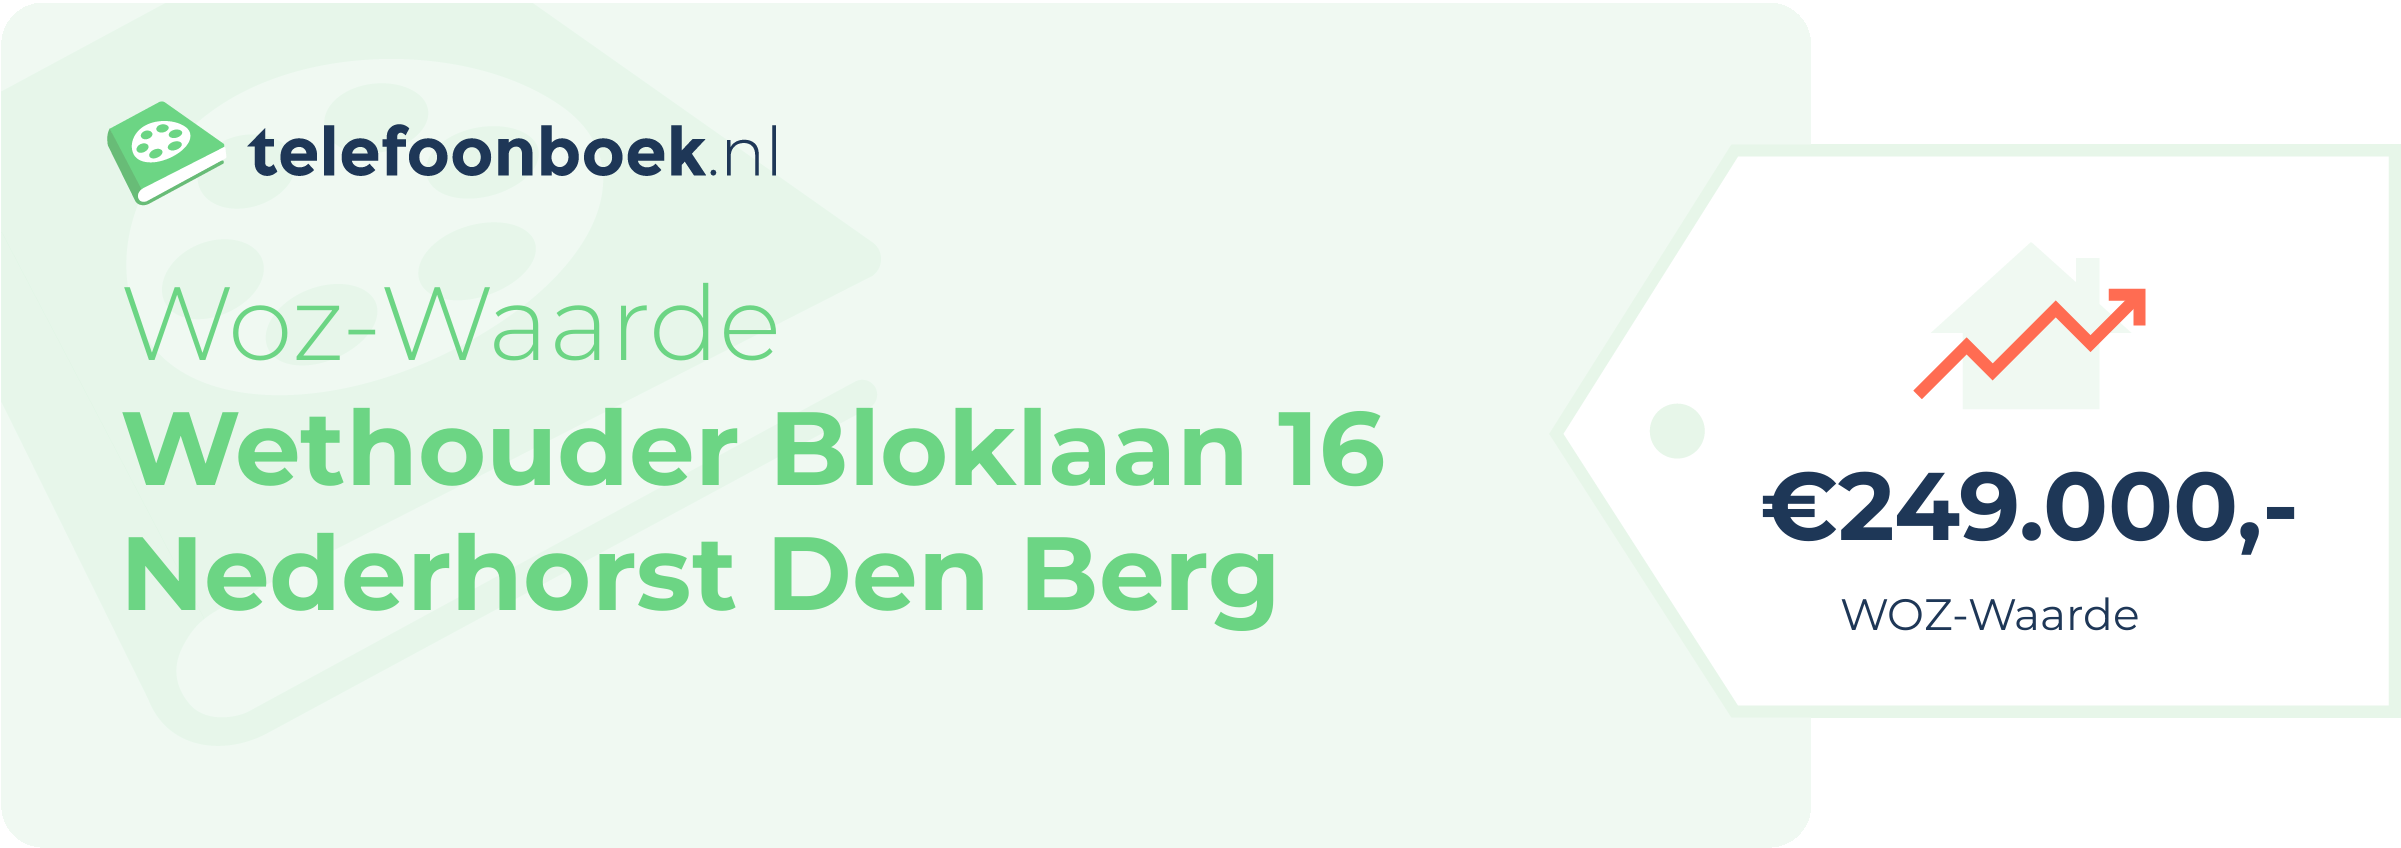 WOZ-waarde Wethouder Bloklaan 16 Nederhorst Den Berg